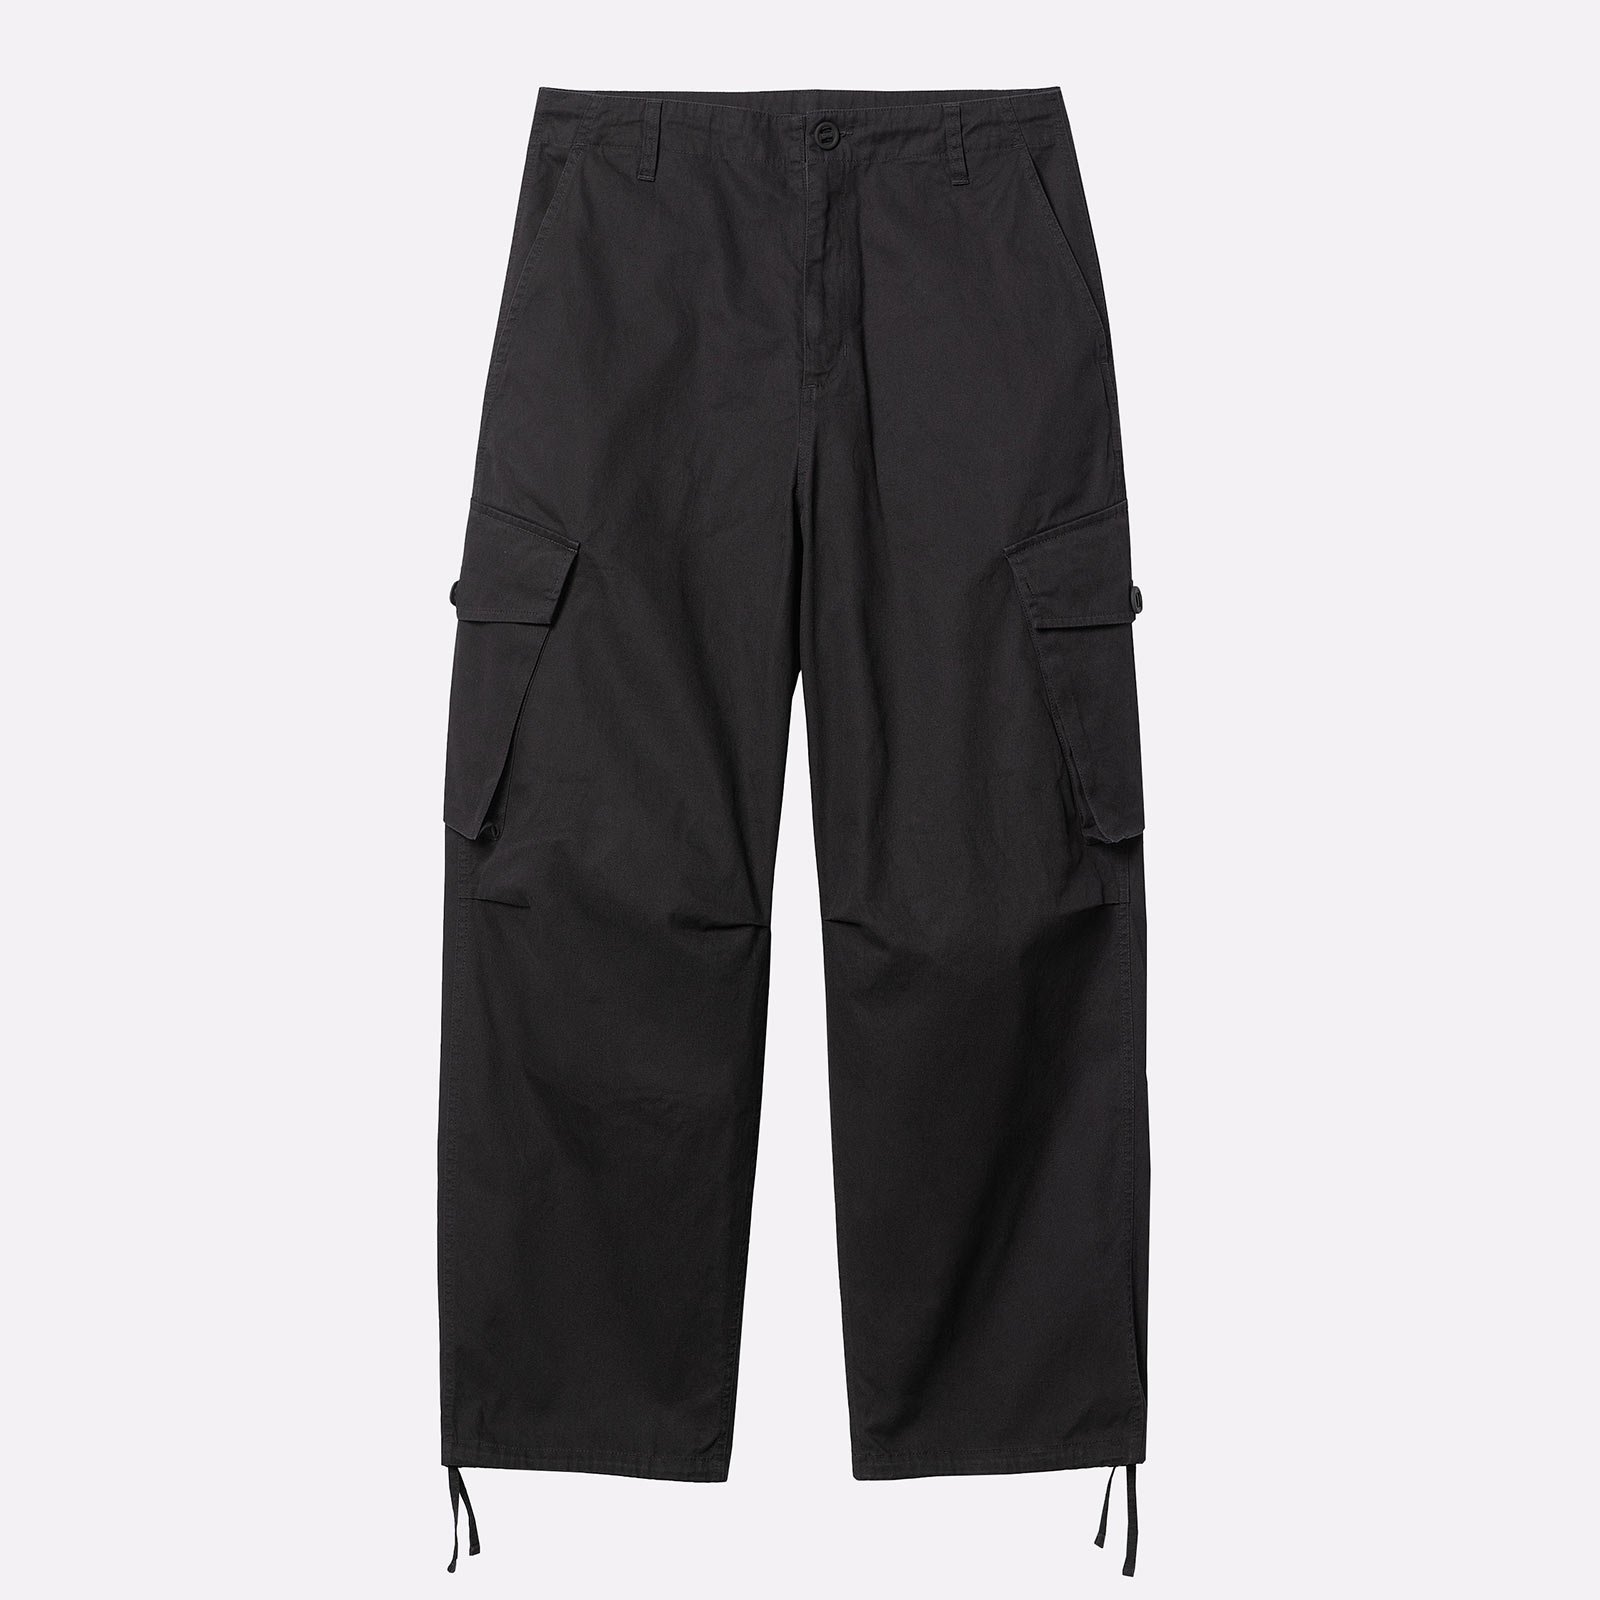 мужские черные брюки Carhartt WIP Unity Pant I032983-black - цена, описание, фото 1